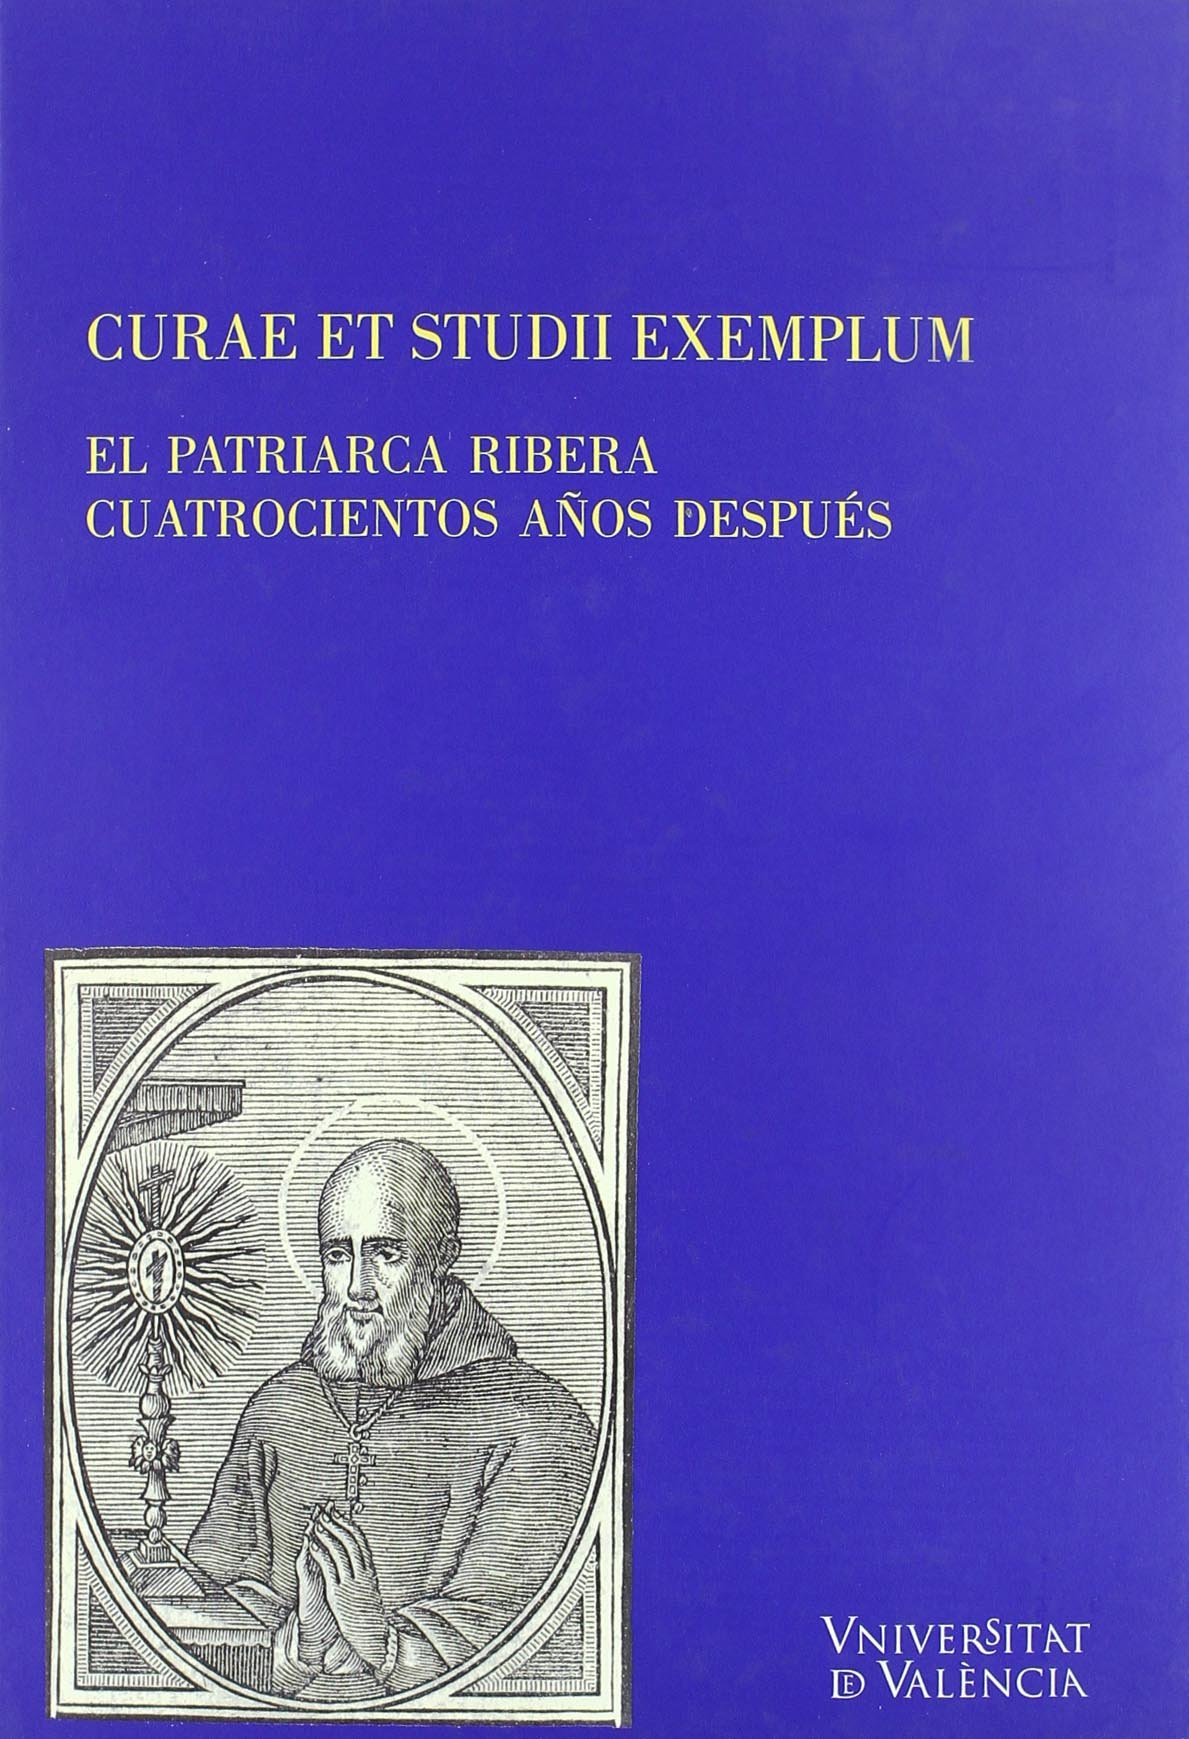 Imagen de portada del libro Curae et studii exemplum